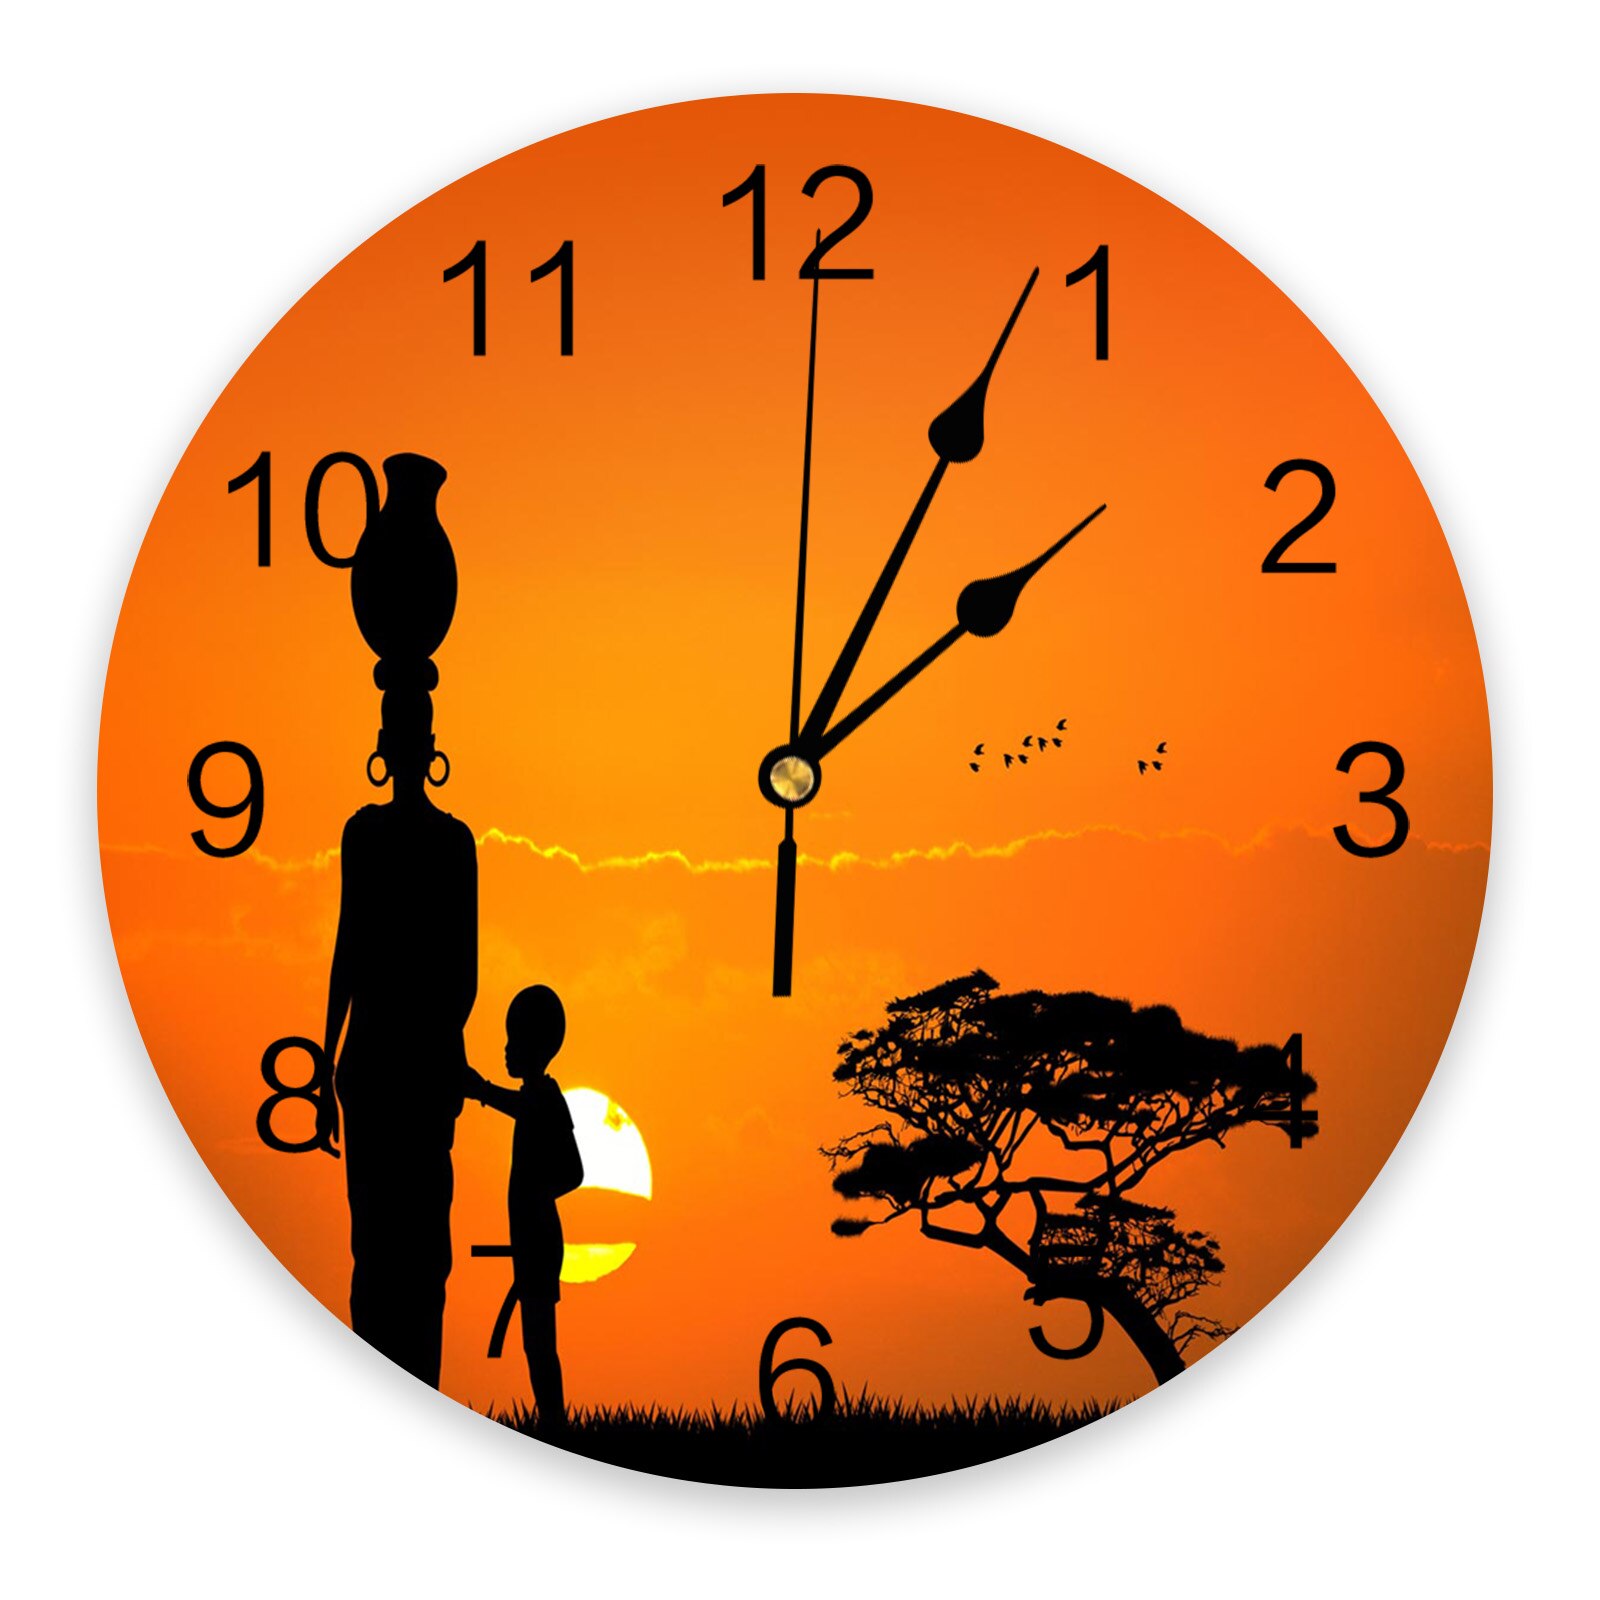 Sunset African Woman Child Bird Wall Clock Home Decor Silent Wall Clock Modern Living Room Decor Wall Digital Clock